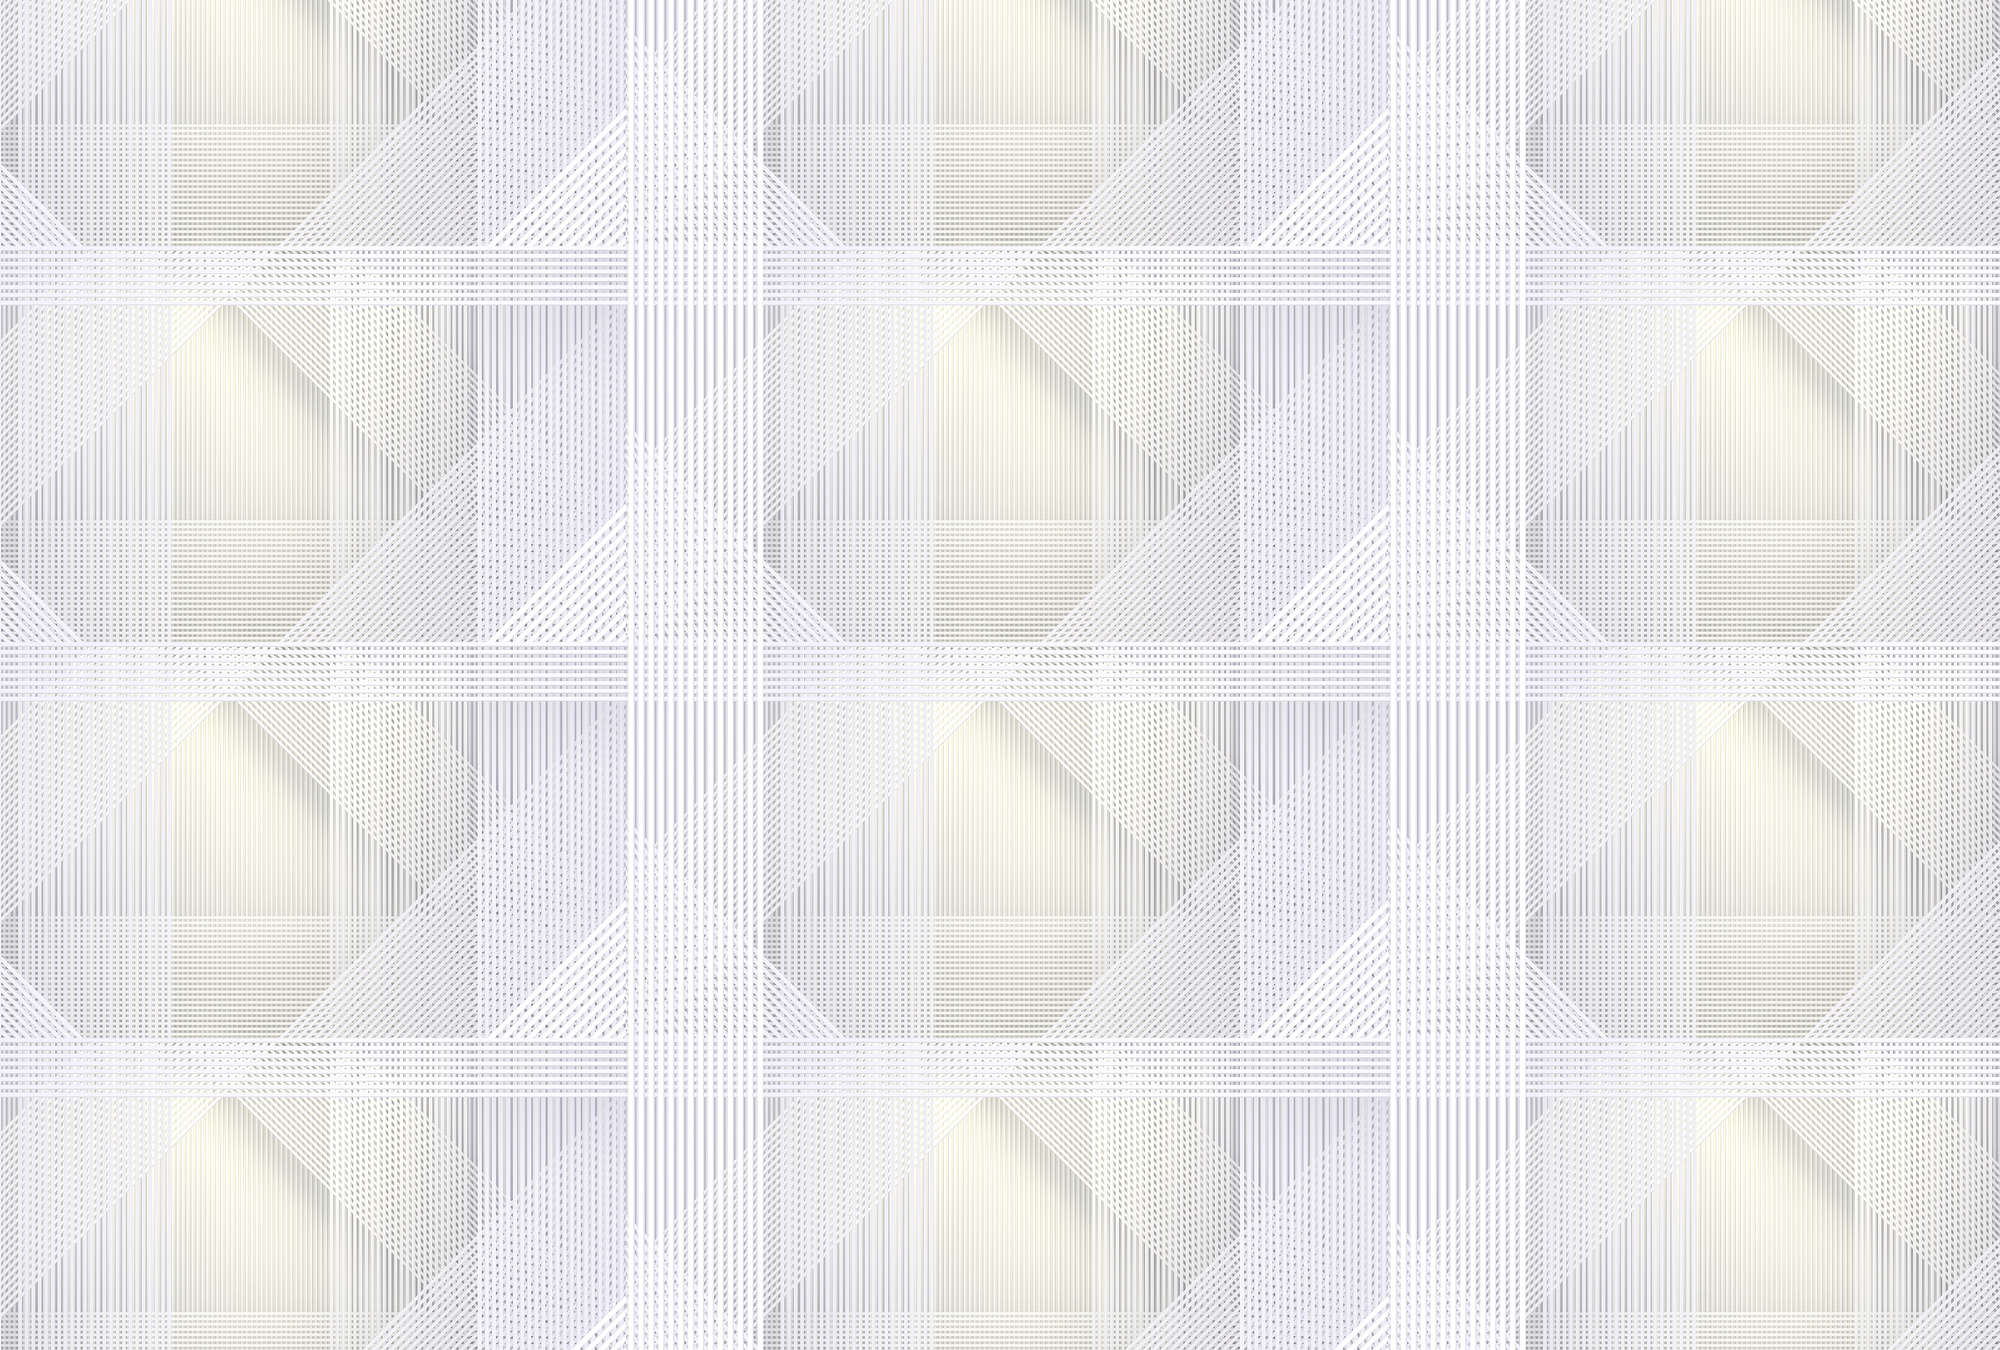             Strings 1 - wallpaper geometric stripe pattern - yellow, grey | texture non-woven
        